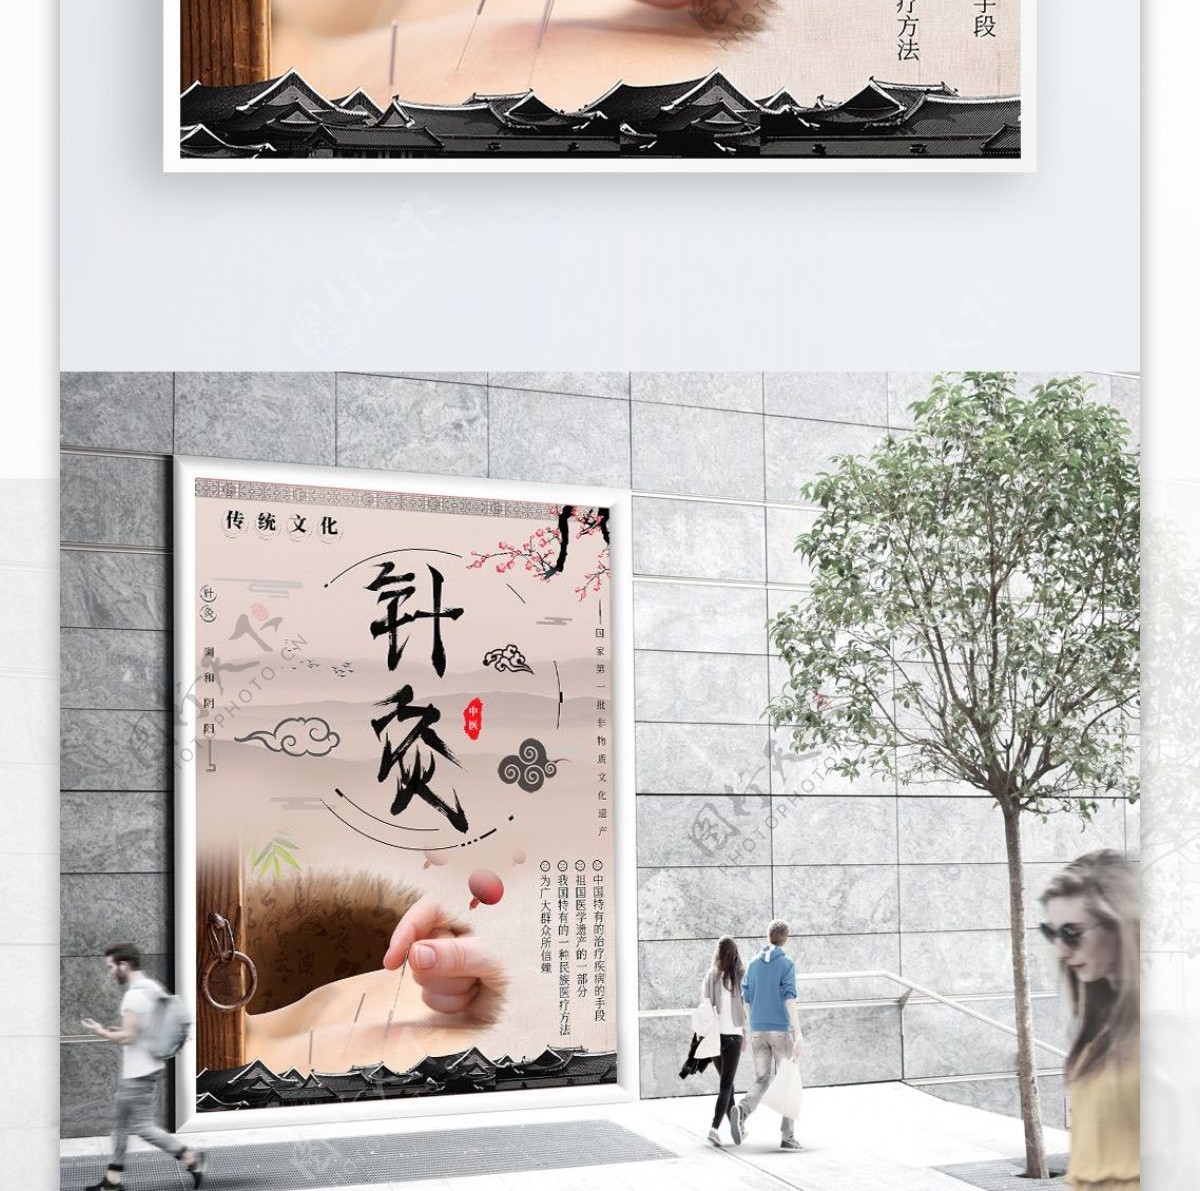 中国风针灸传统文化海报